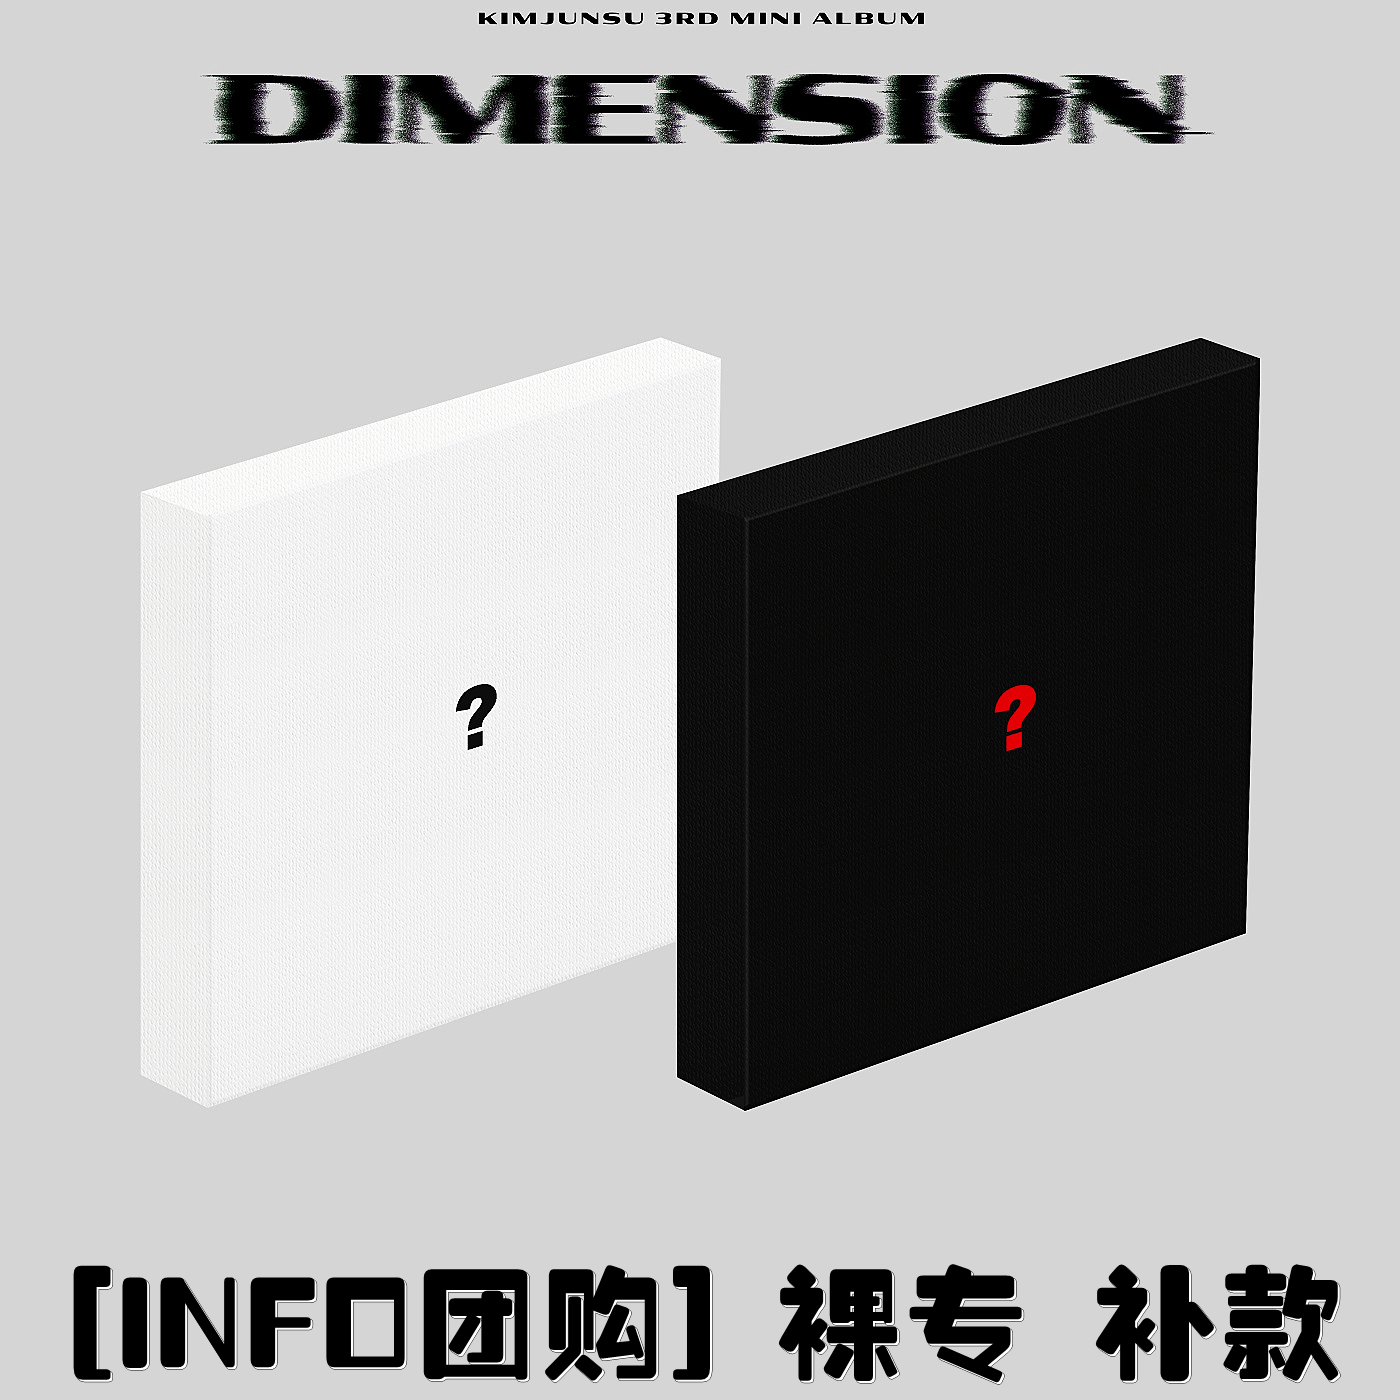 [补款 裸专] KIMJUNSU - 3rd MINI ALBUM [DIMENSION]_infoXIAtion金俊秀空间